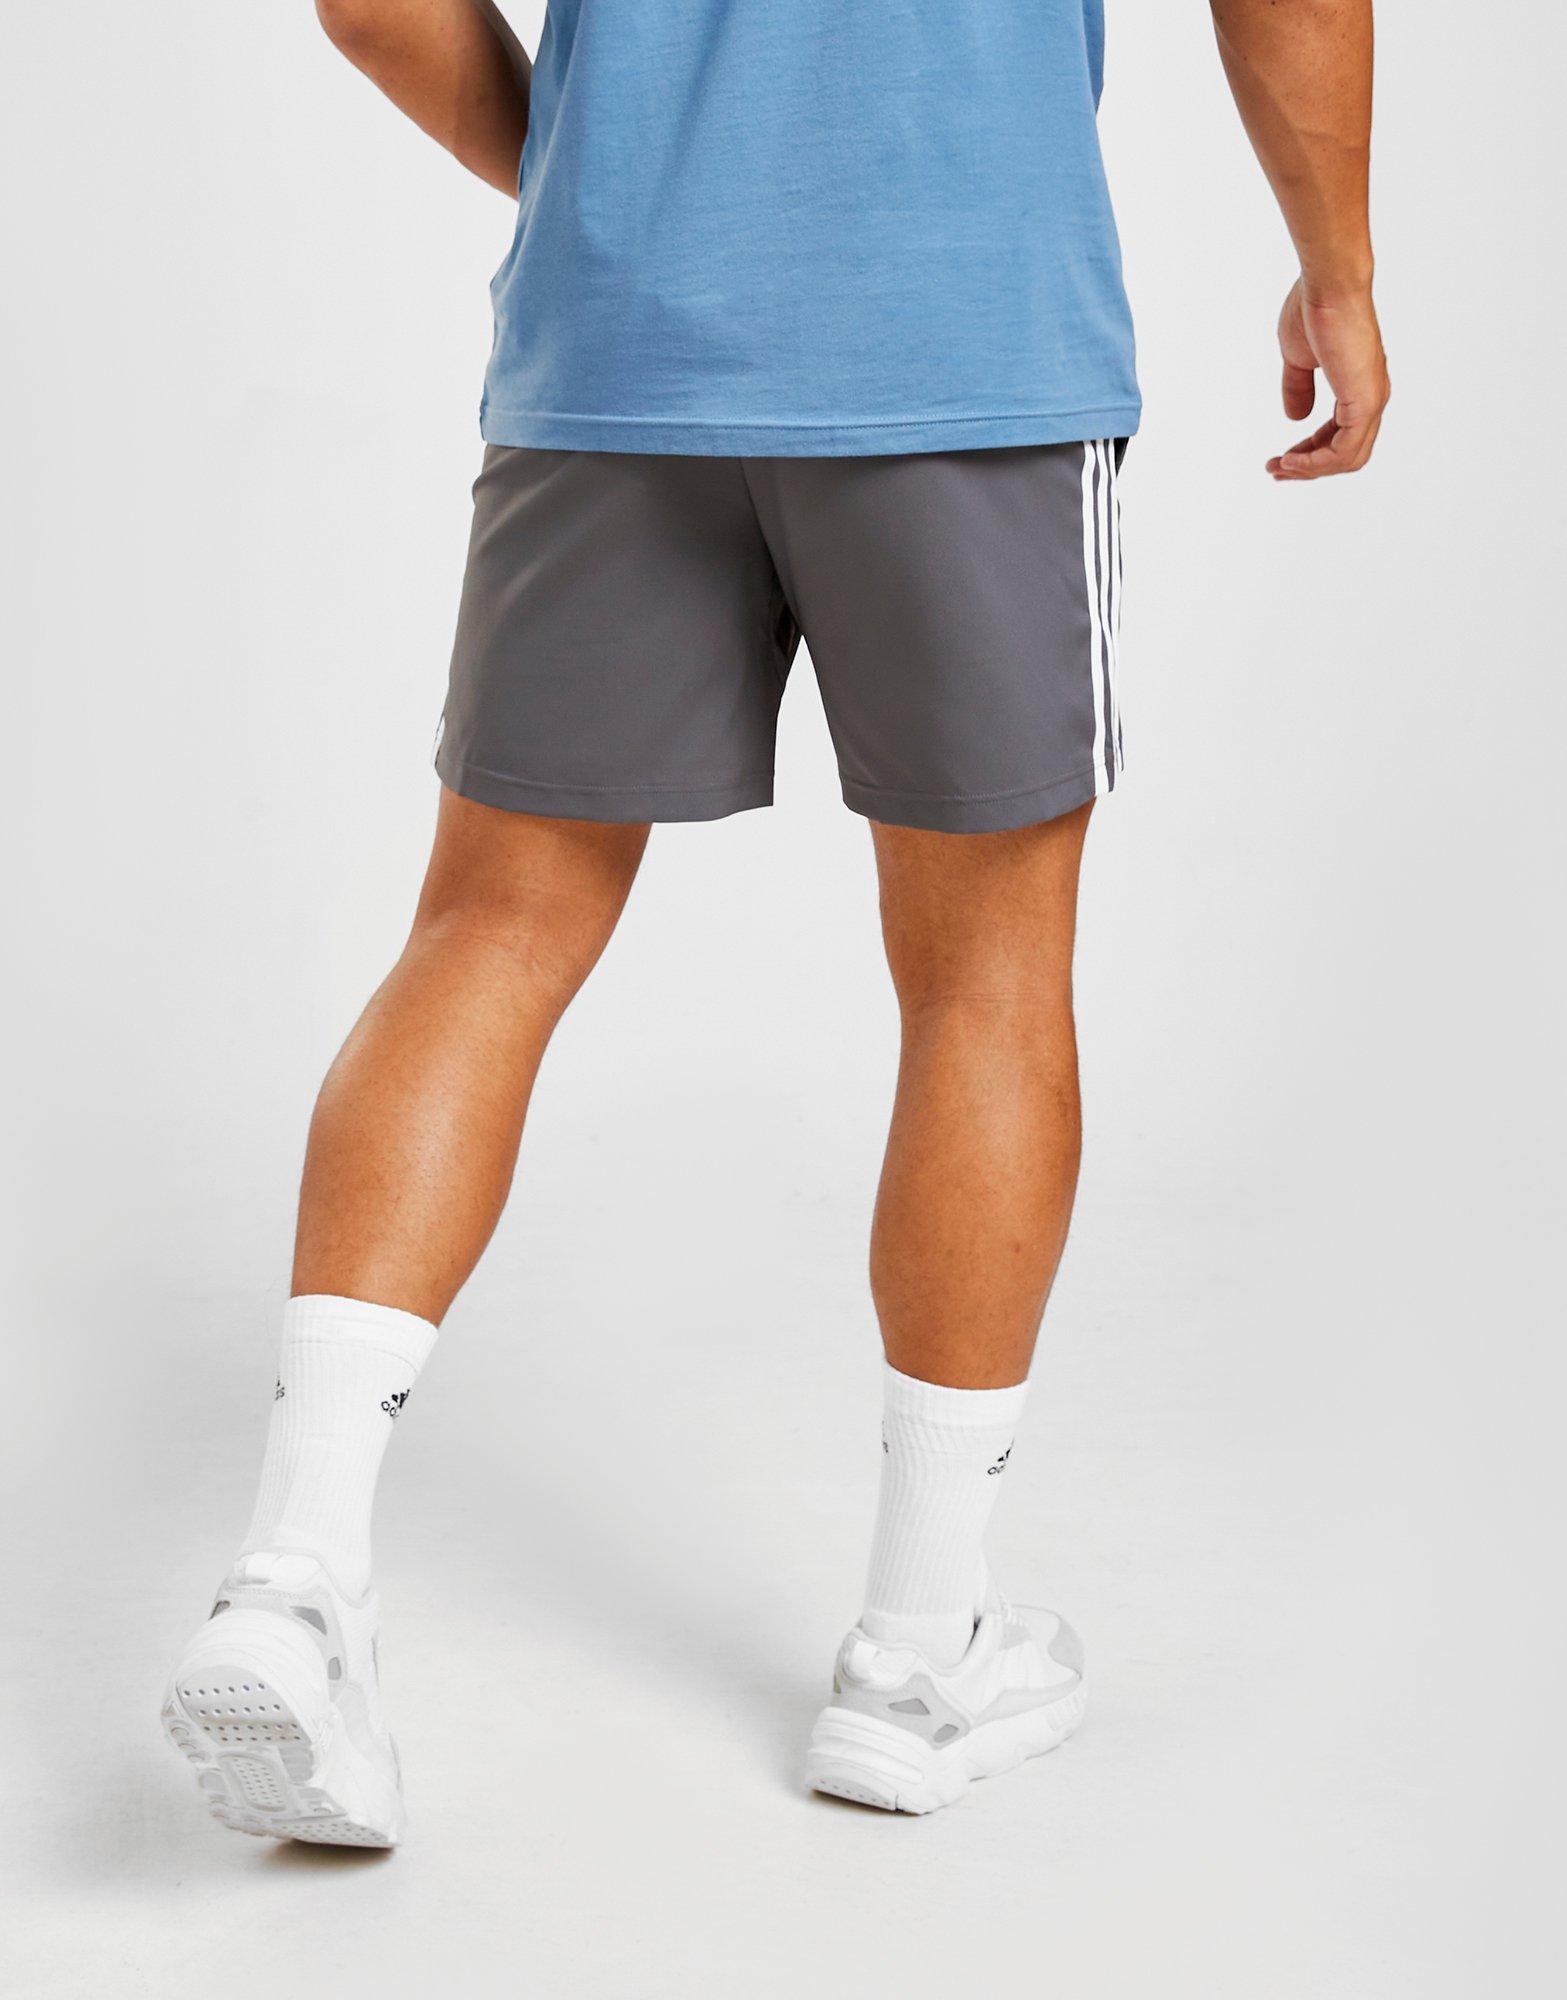 adidas match woven shorts